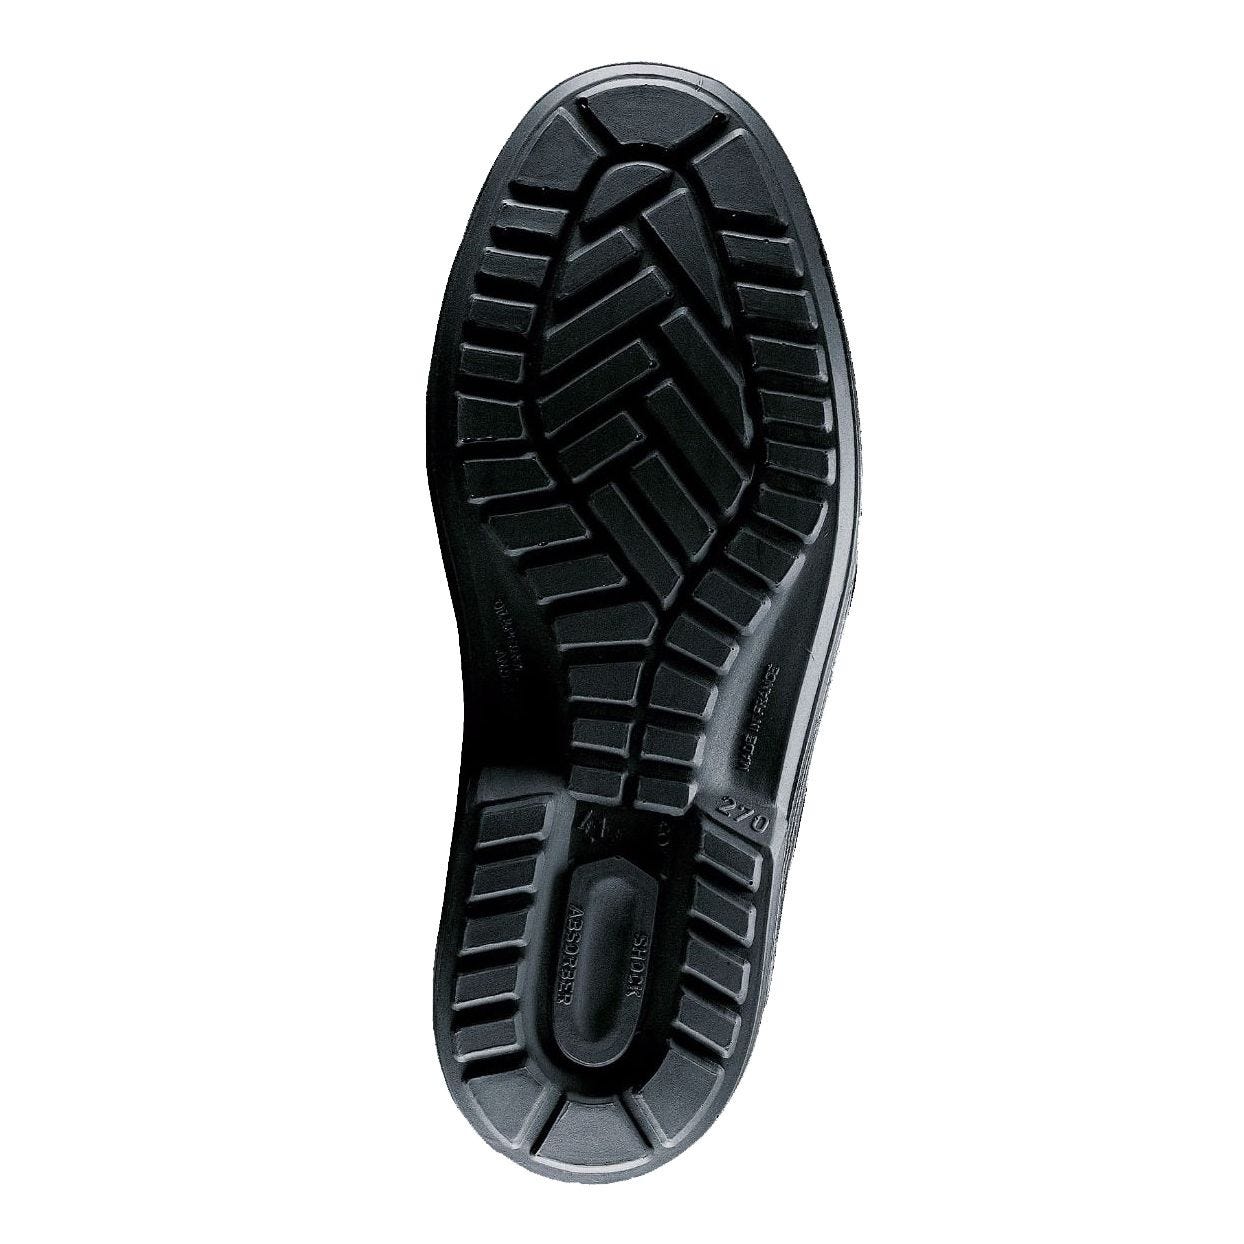 Chaussures de sécurité basses VEGA S3 SRC noir P40 - LEMAITRE SECURITE - VEGAS30NR.40 1